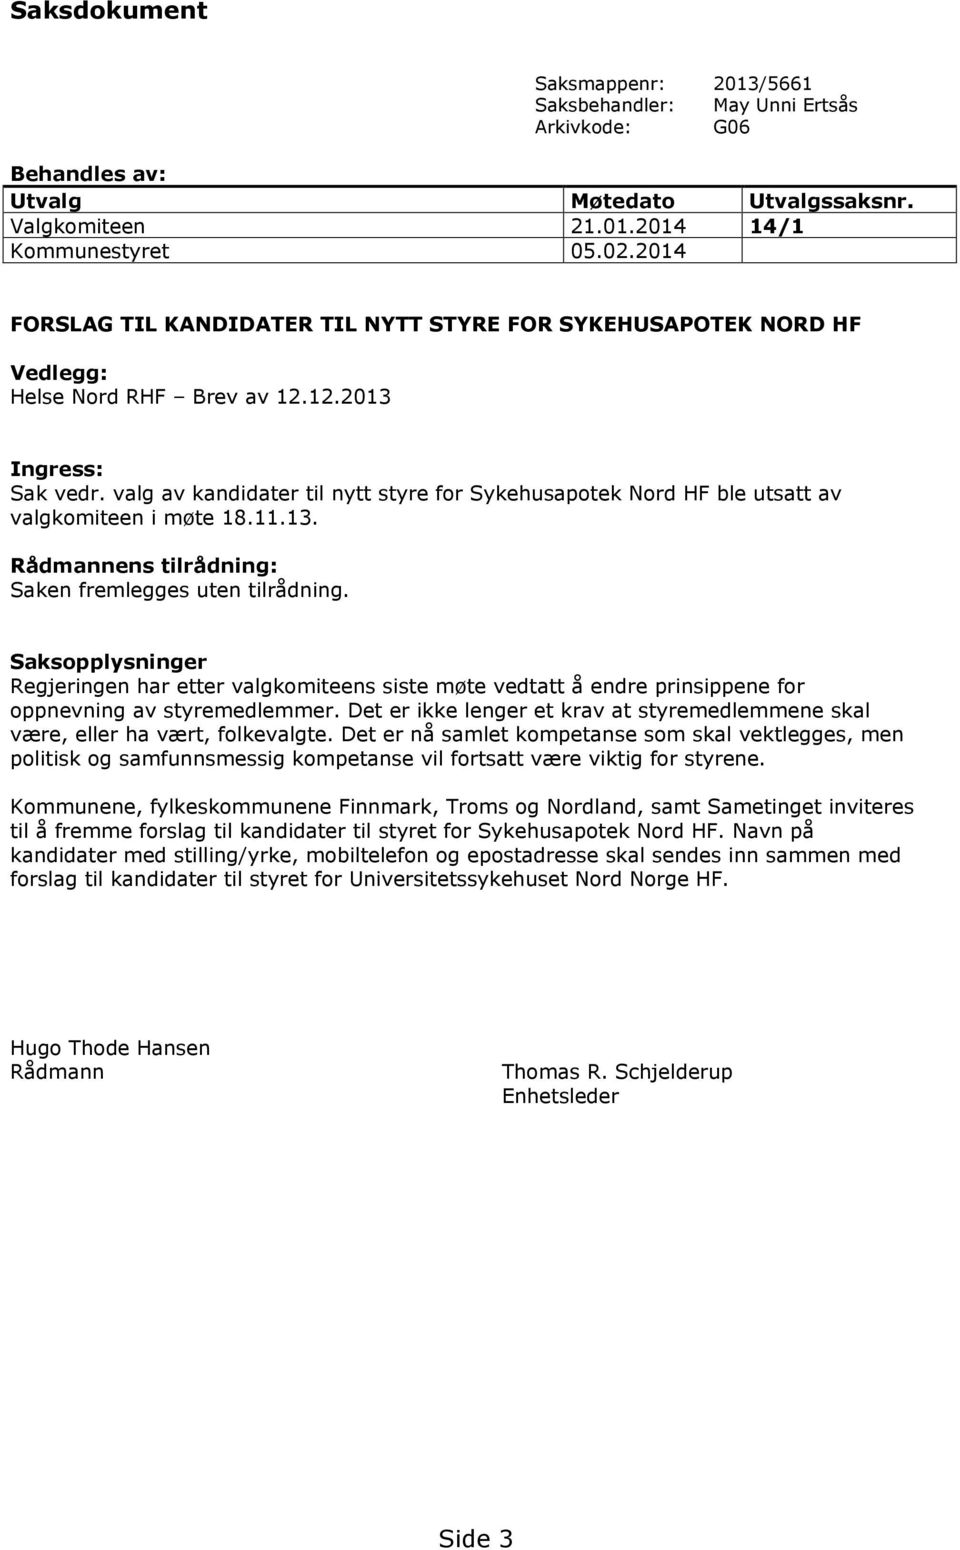 valg av kandidater til nytt styre for Sykehusapotek Nord HF ble utsatt av valgkomiteen i møte 18.11.13. Rådmannens tilrådning: Saken fremlegges uten tilrådning.